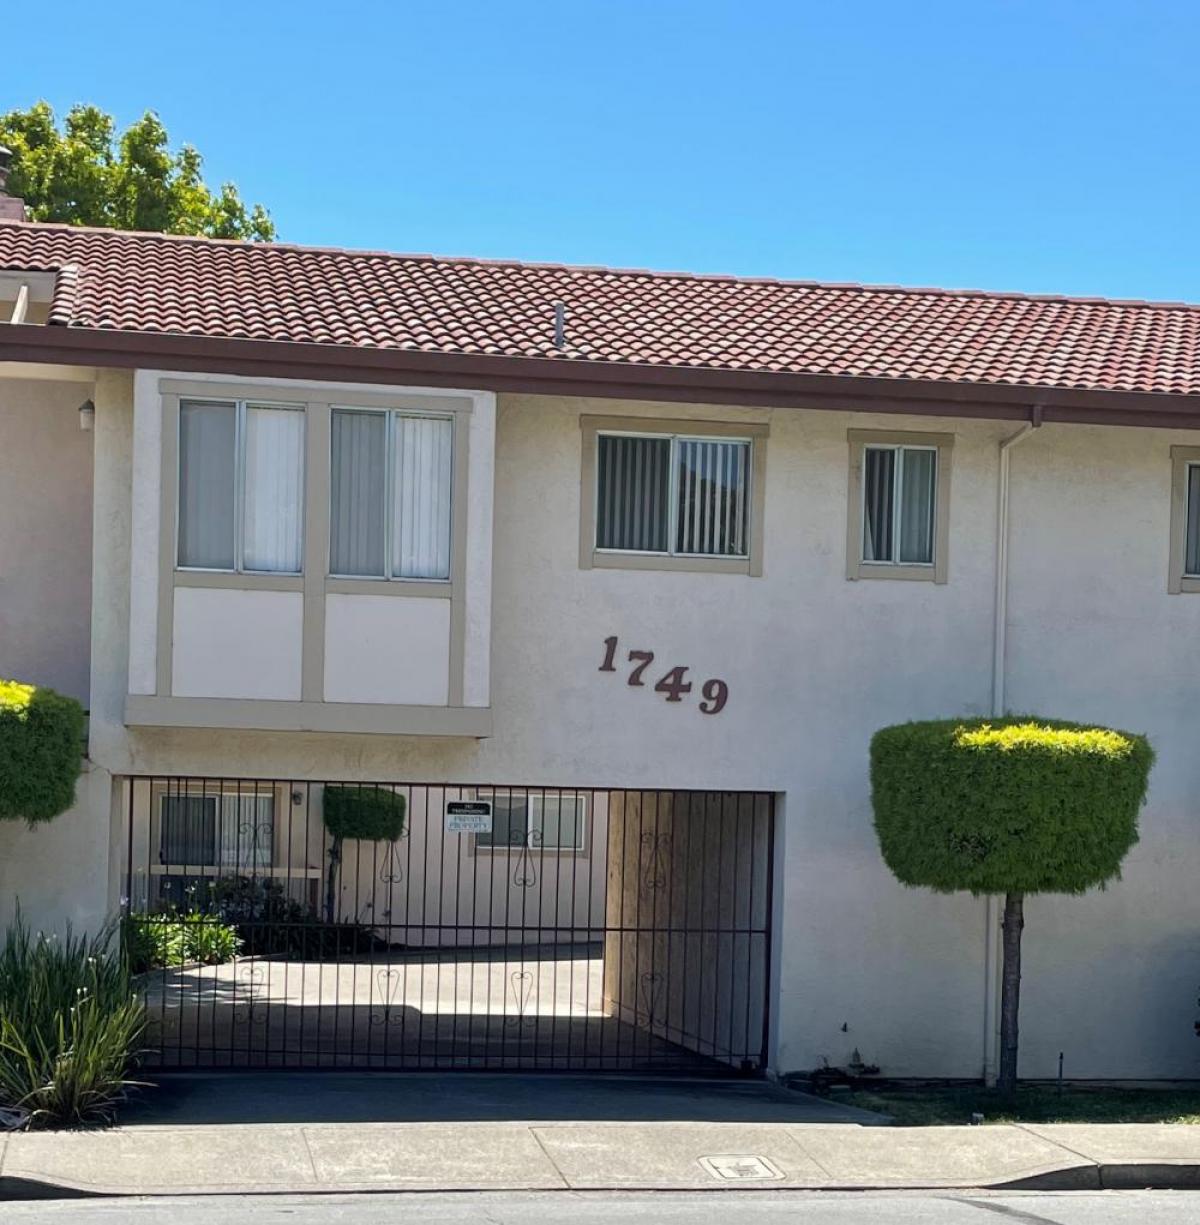 Picture of Apartment For Rent in El Cerrito, California, United States